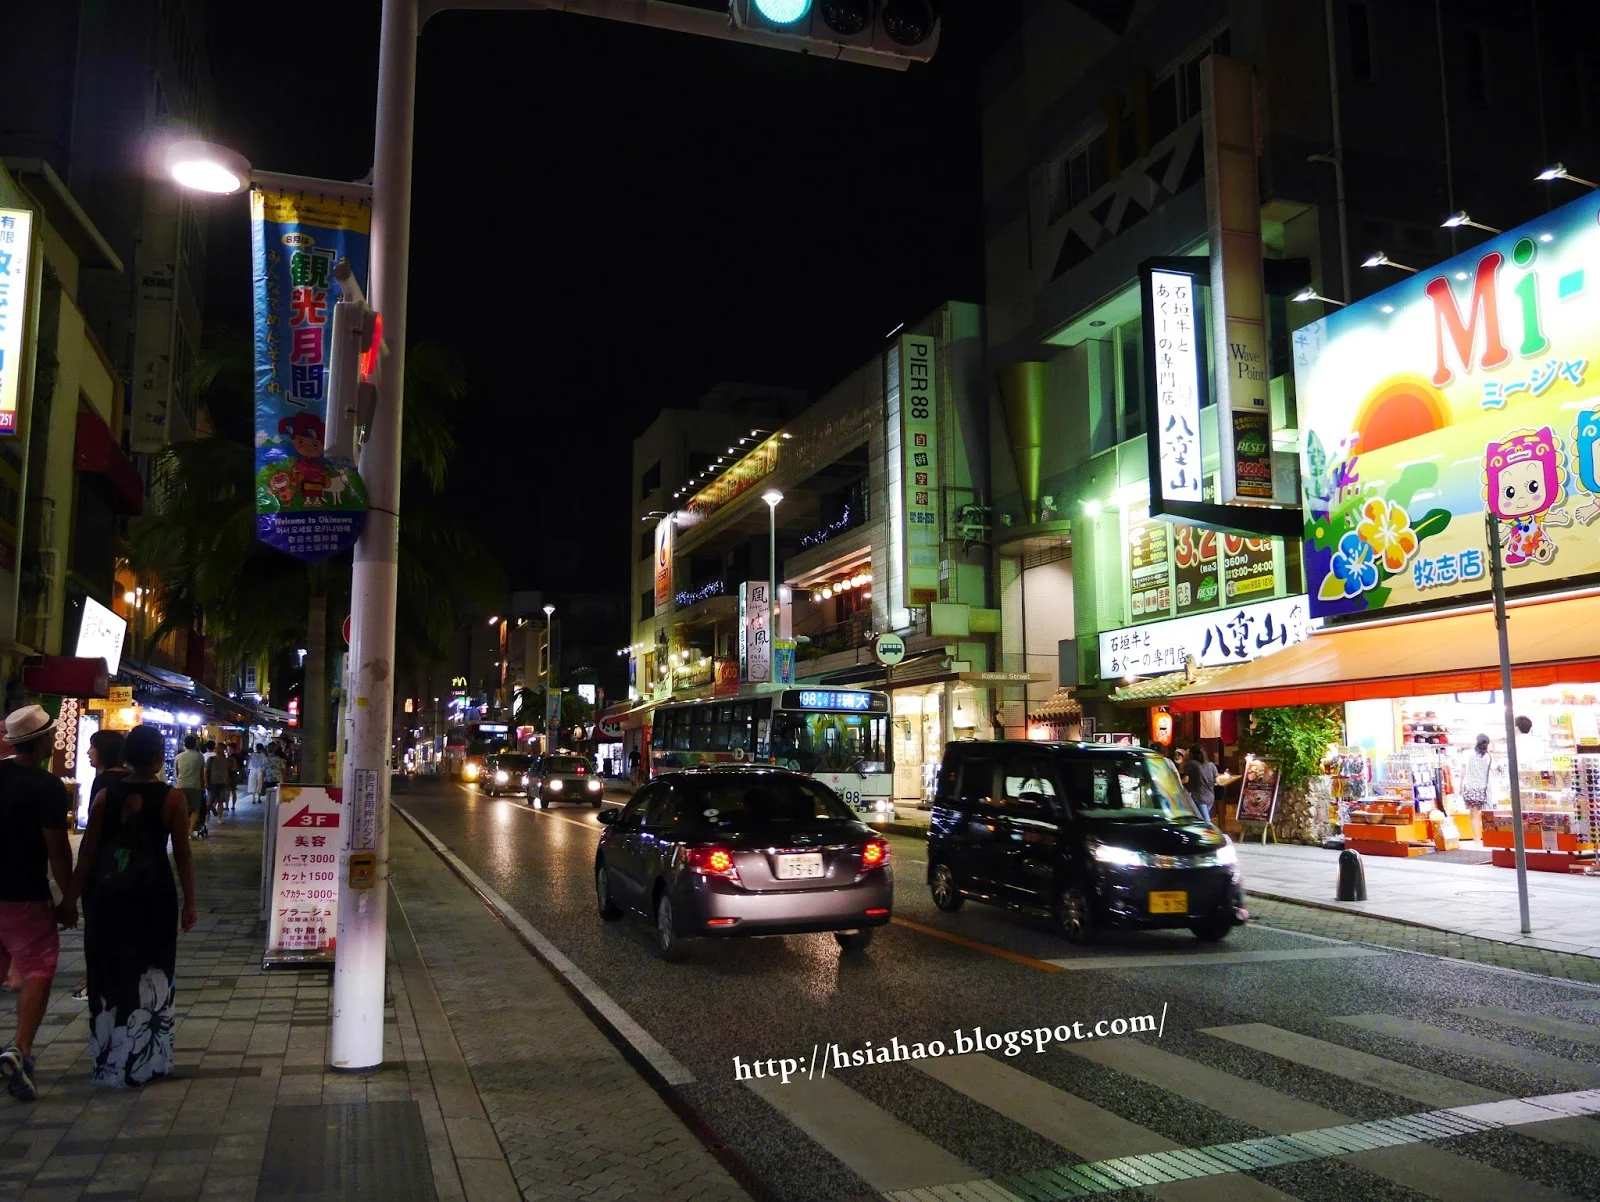 沖繩-國際通-夜晚-商店-國際通購物-國際通逛街-國際通景點-自由行-Okinawa-kokusaidori